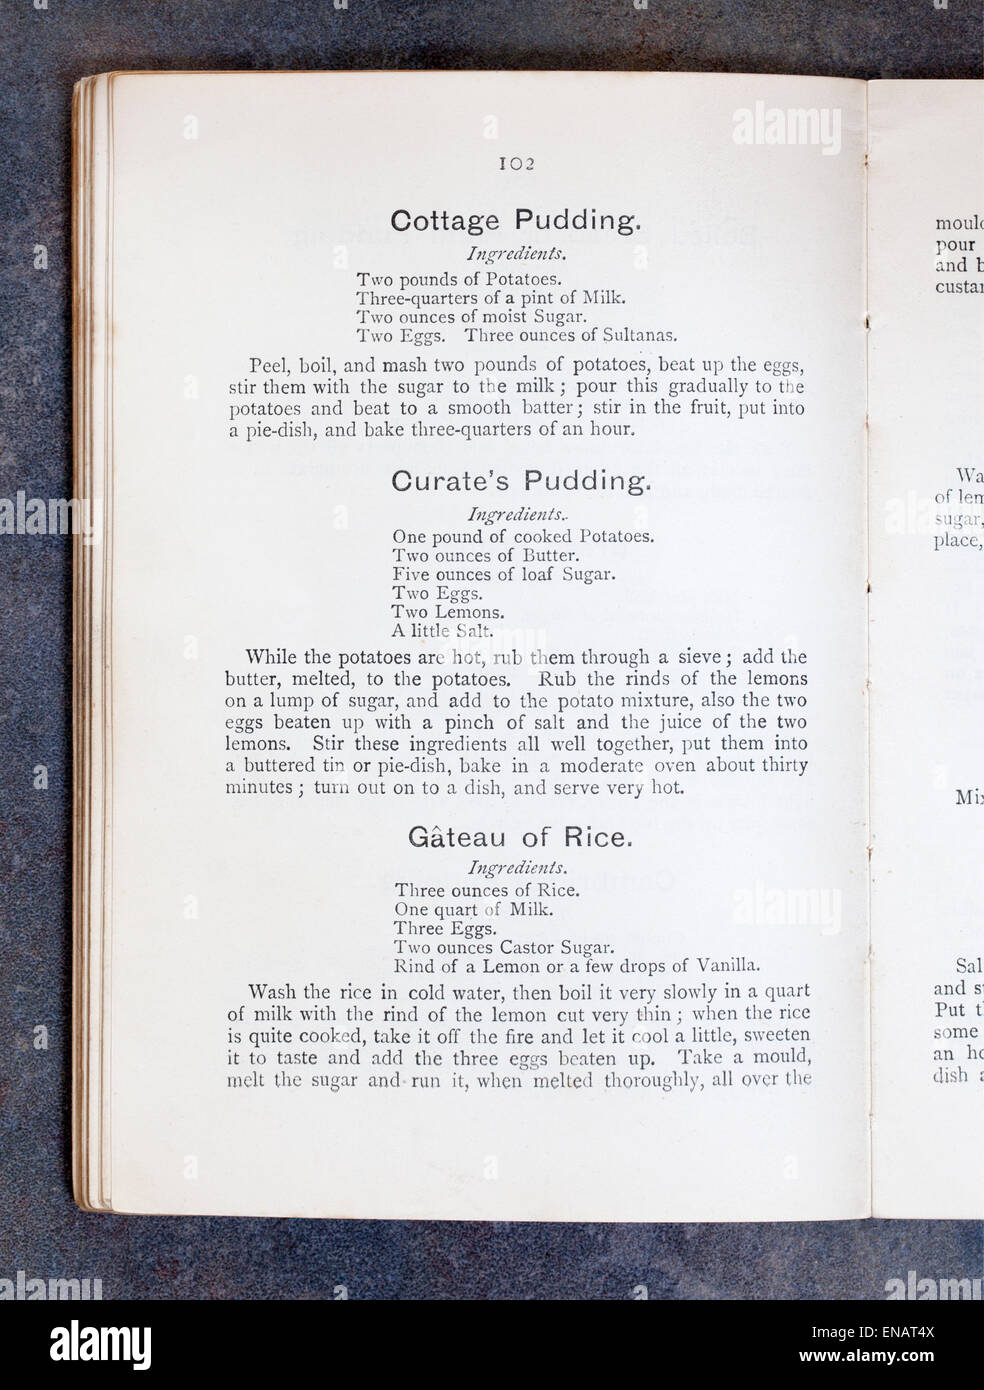 Ferienhaus Pudding, kuratiert Pudding und Gateau von Reis Rezepte aus einem alten Jahrgang Kochbuch Stockfoto